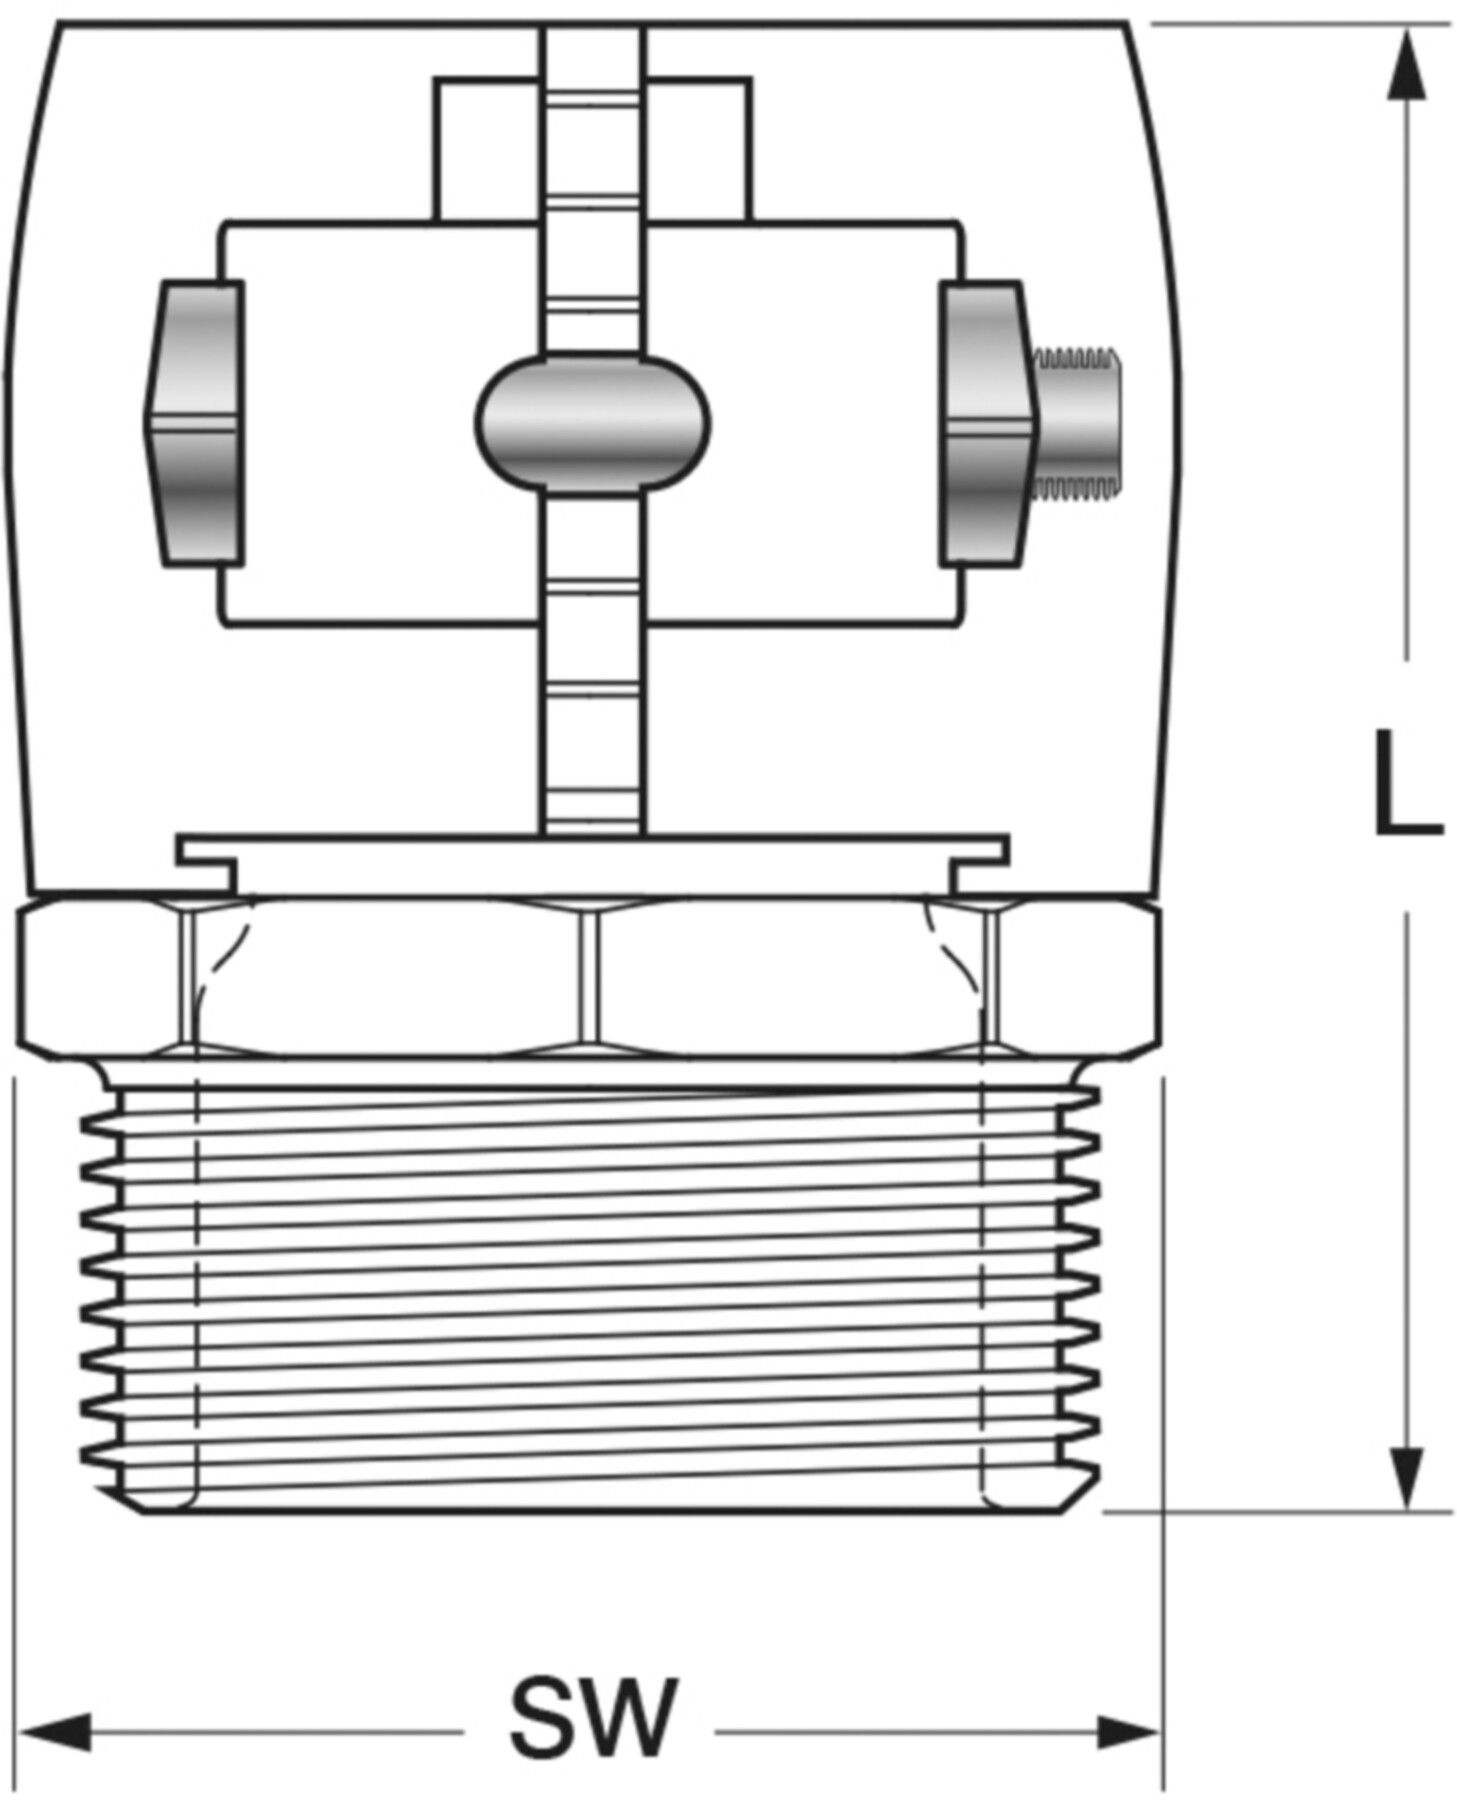 Klemm-Verbindungen mit Aussengewinde Jentro H - 40 ø 40/3.7 mm AG 11/4" - Isopex Fernwärmeleitung